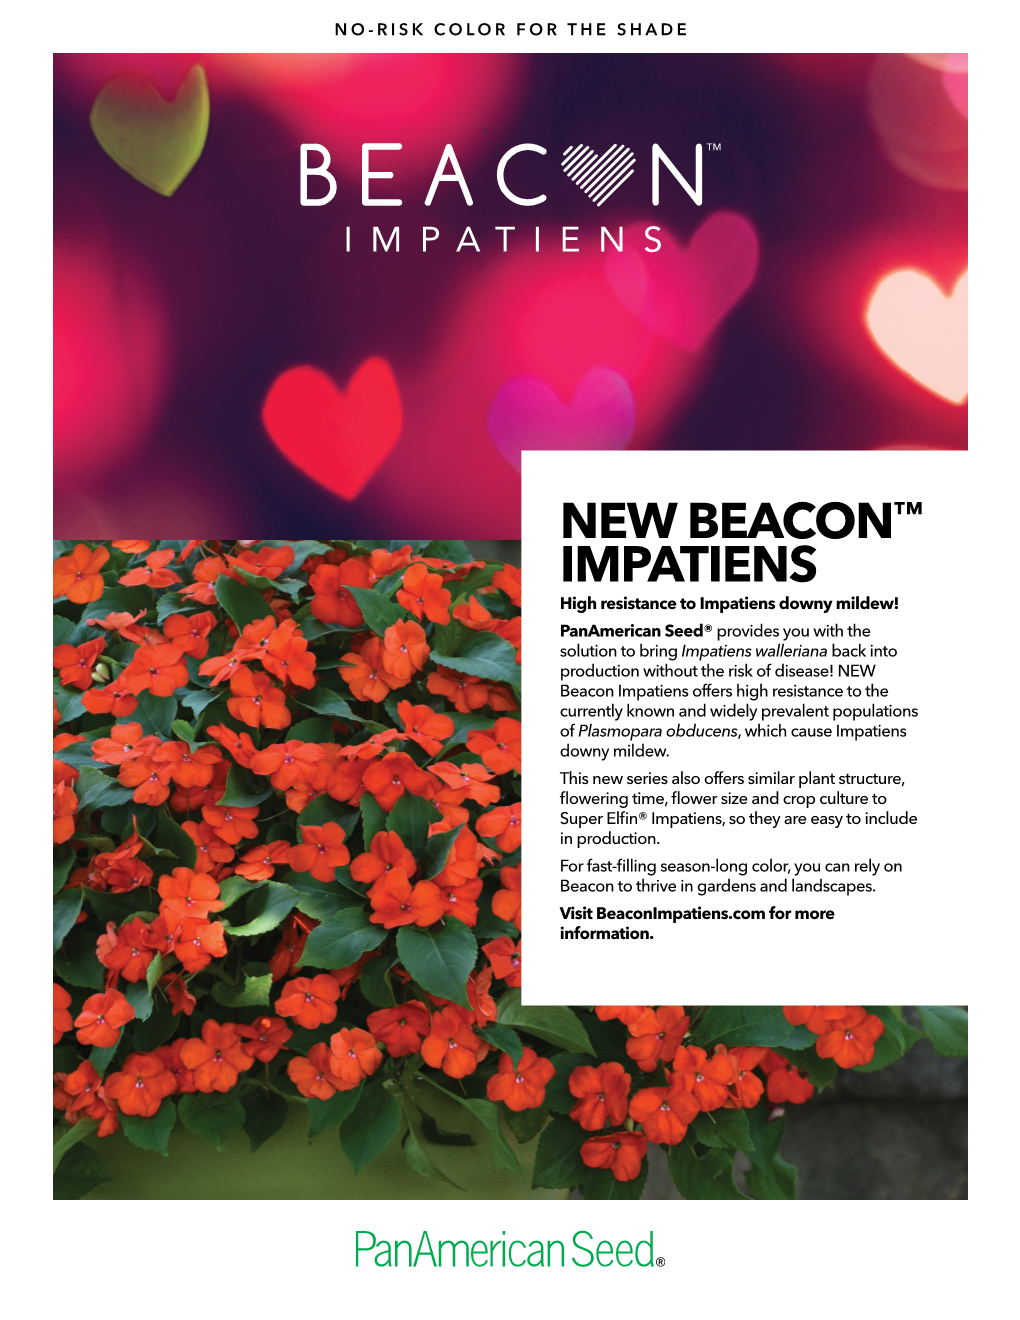 New Beacon™ Impatiens